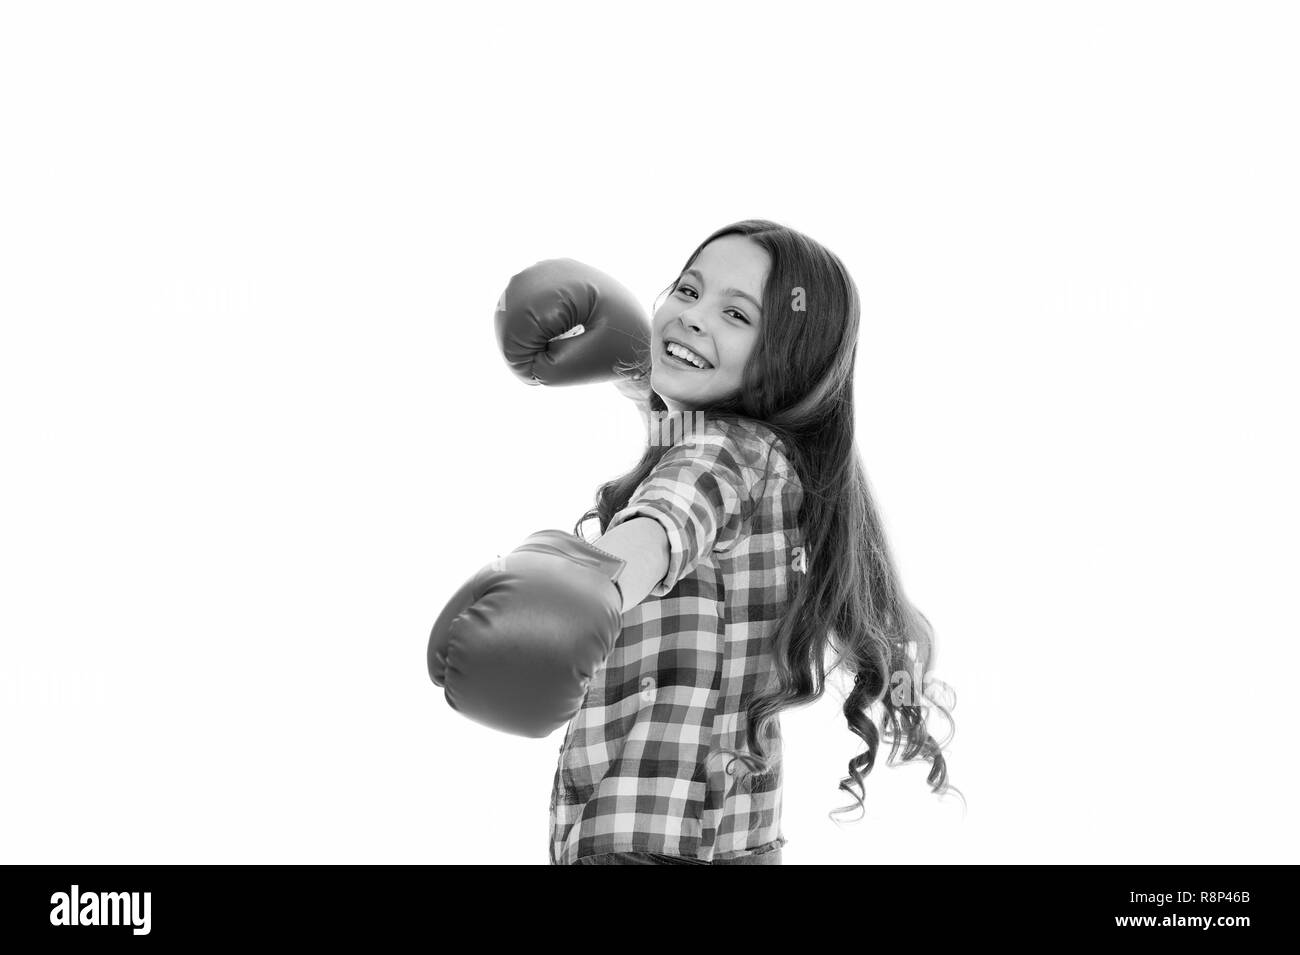 Jede Frau sollte wissen, sich selbst zu verteidigen. Mädchen fröhliches Training Boxhandschuhe. Kind lächelndes Gesicht sport Handschuhe Praxis Kampffertigkeiten isoliert weiß. Mädchen macht. Fühlen Sie sich frei, komfortabel und sicher. Stockfoto